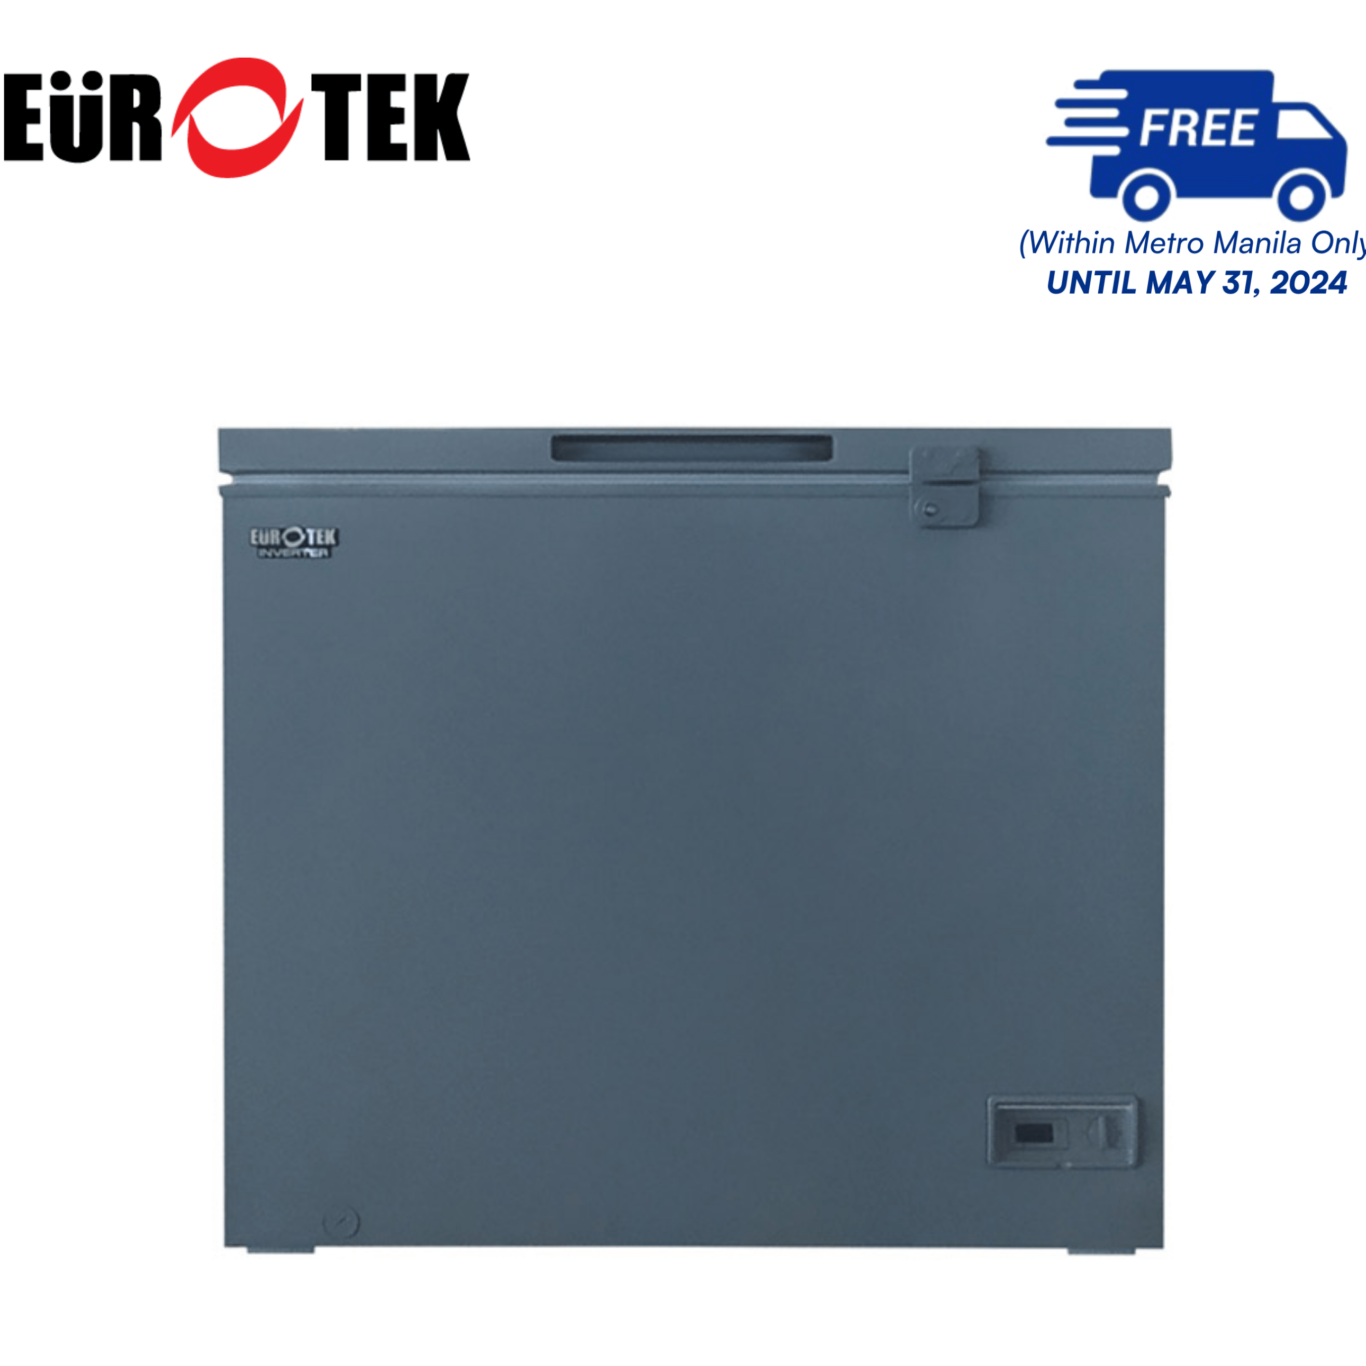 Eurotek ECF165IC